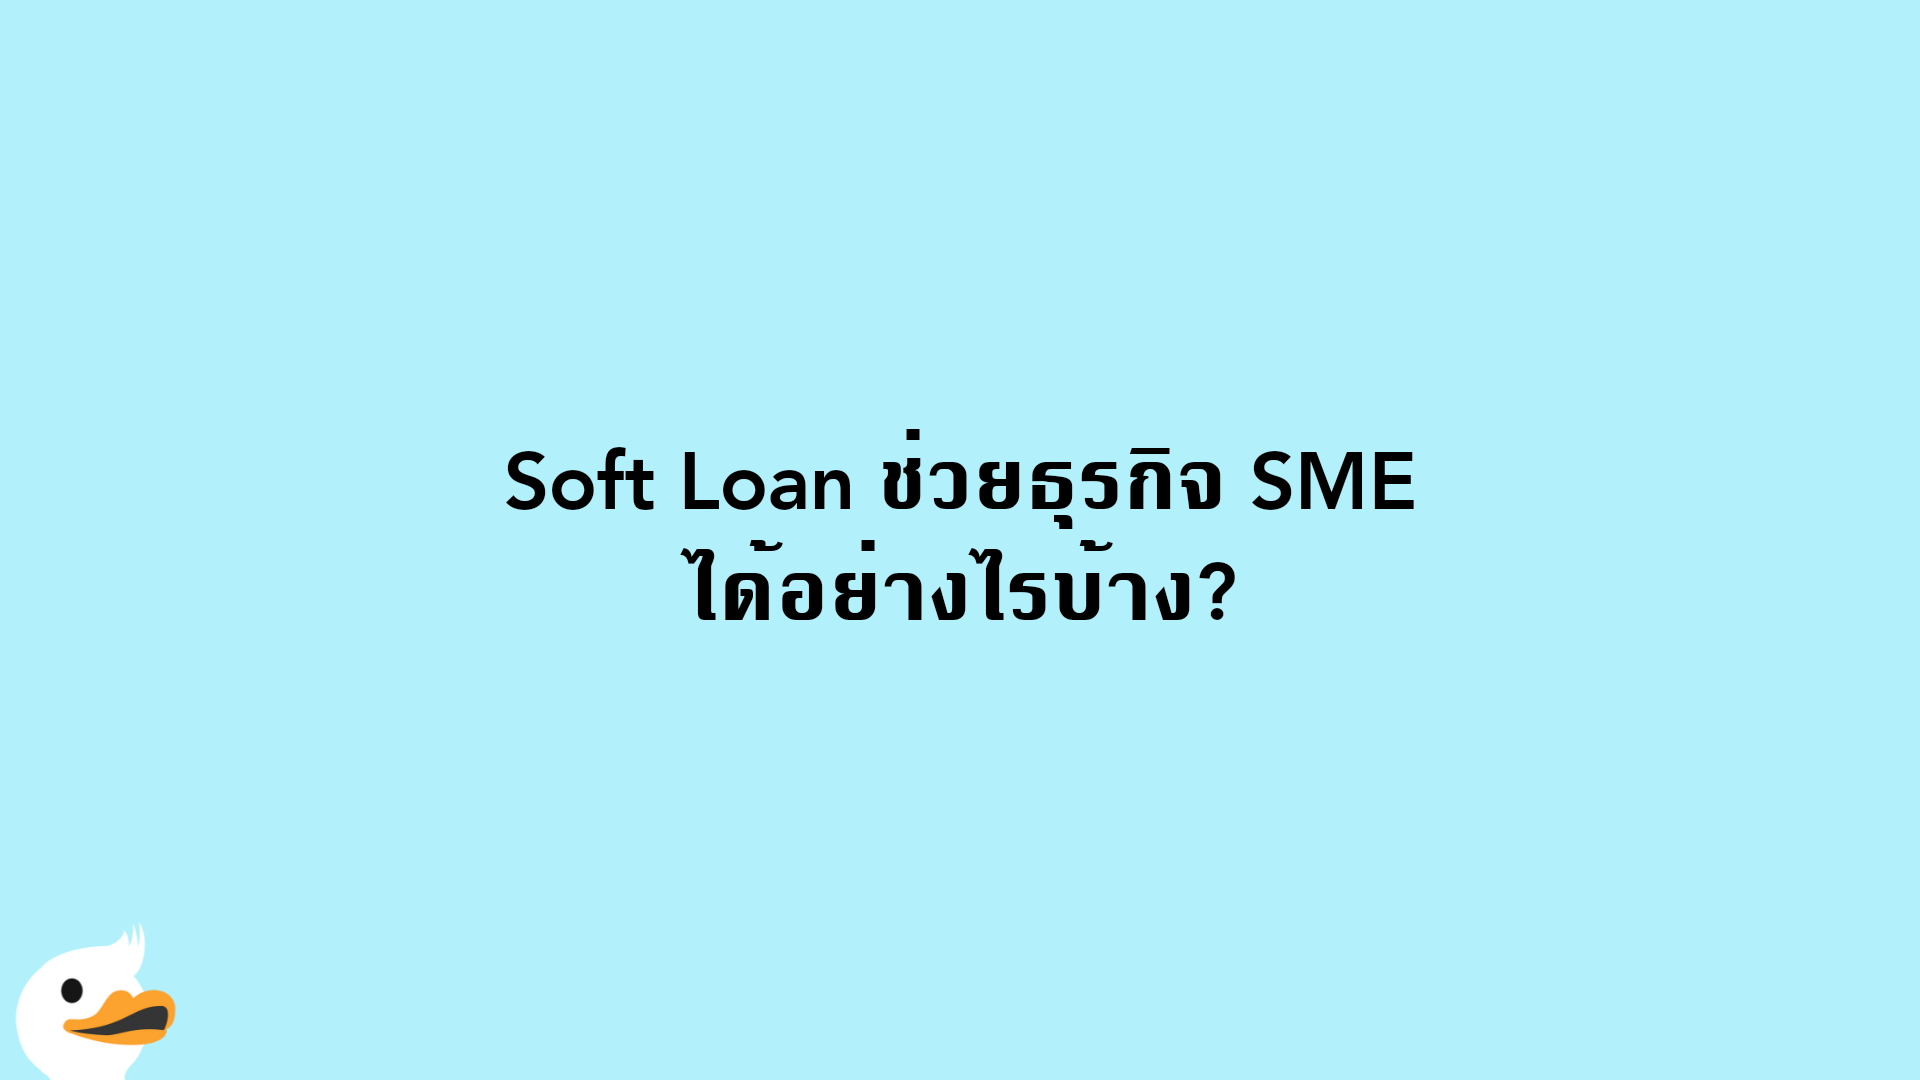 Soft Loan ช่วยธุรกิจ SME ได้อย่างไรบ้าง?